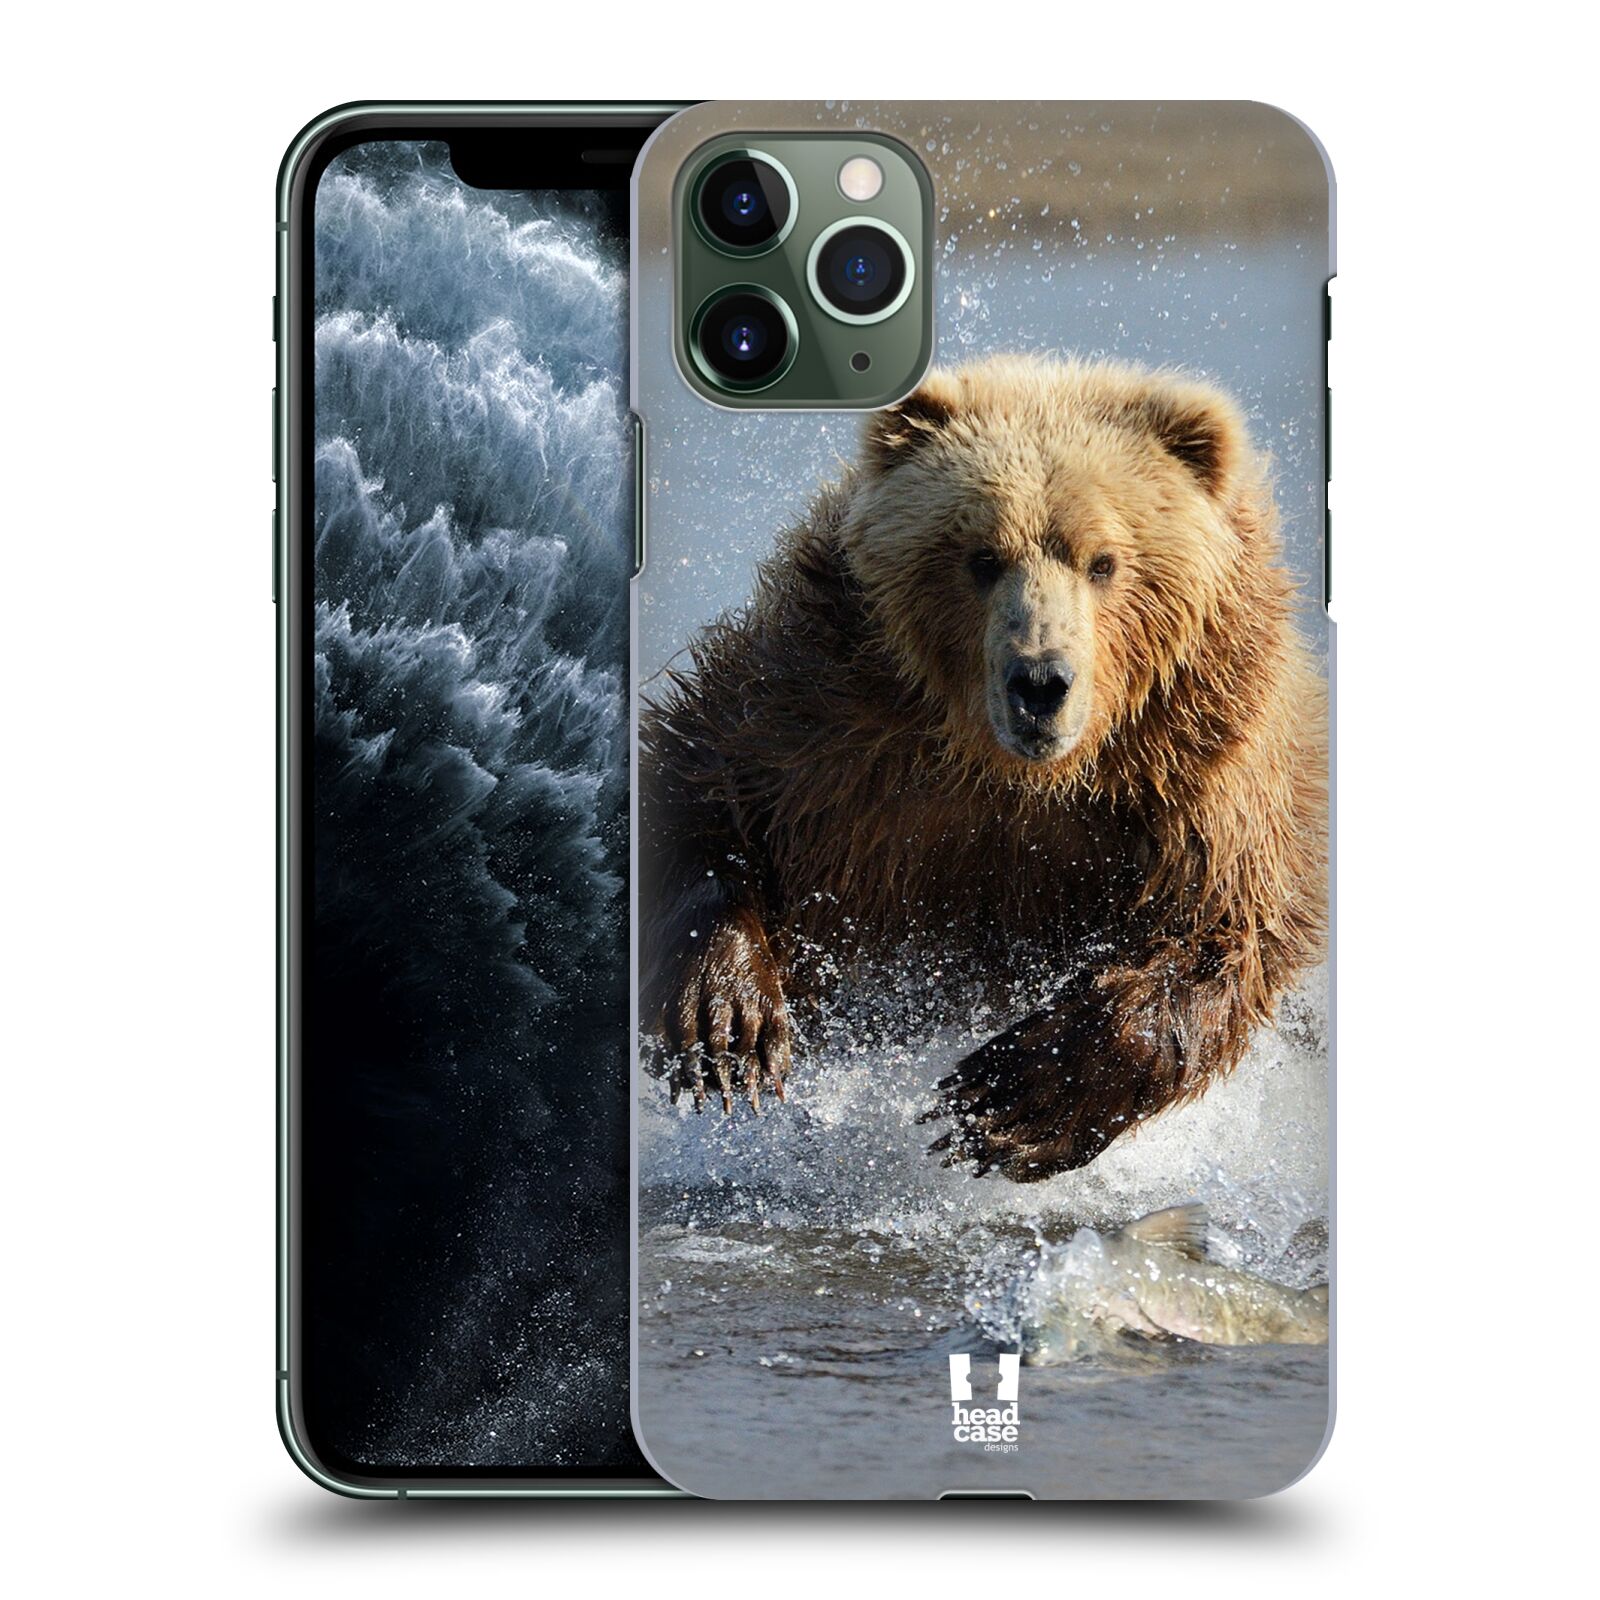 Pouzdro na mobil Apple Iphone 11 PRO MAX - HEAD CASE - vzor Divočina, Divoký život a zvířata foto MEDVĚD GRIZZLY HŇEDÁ